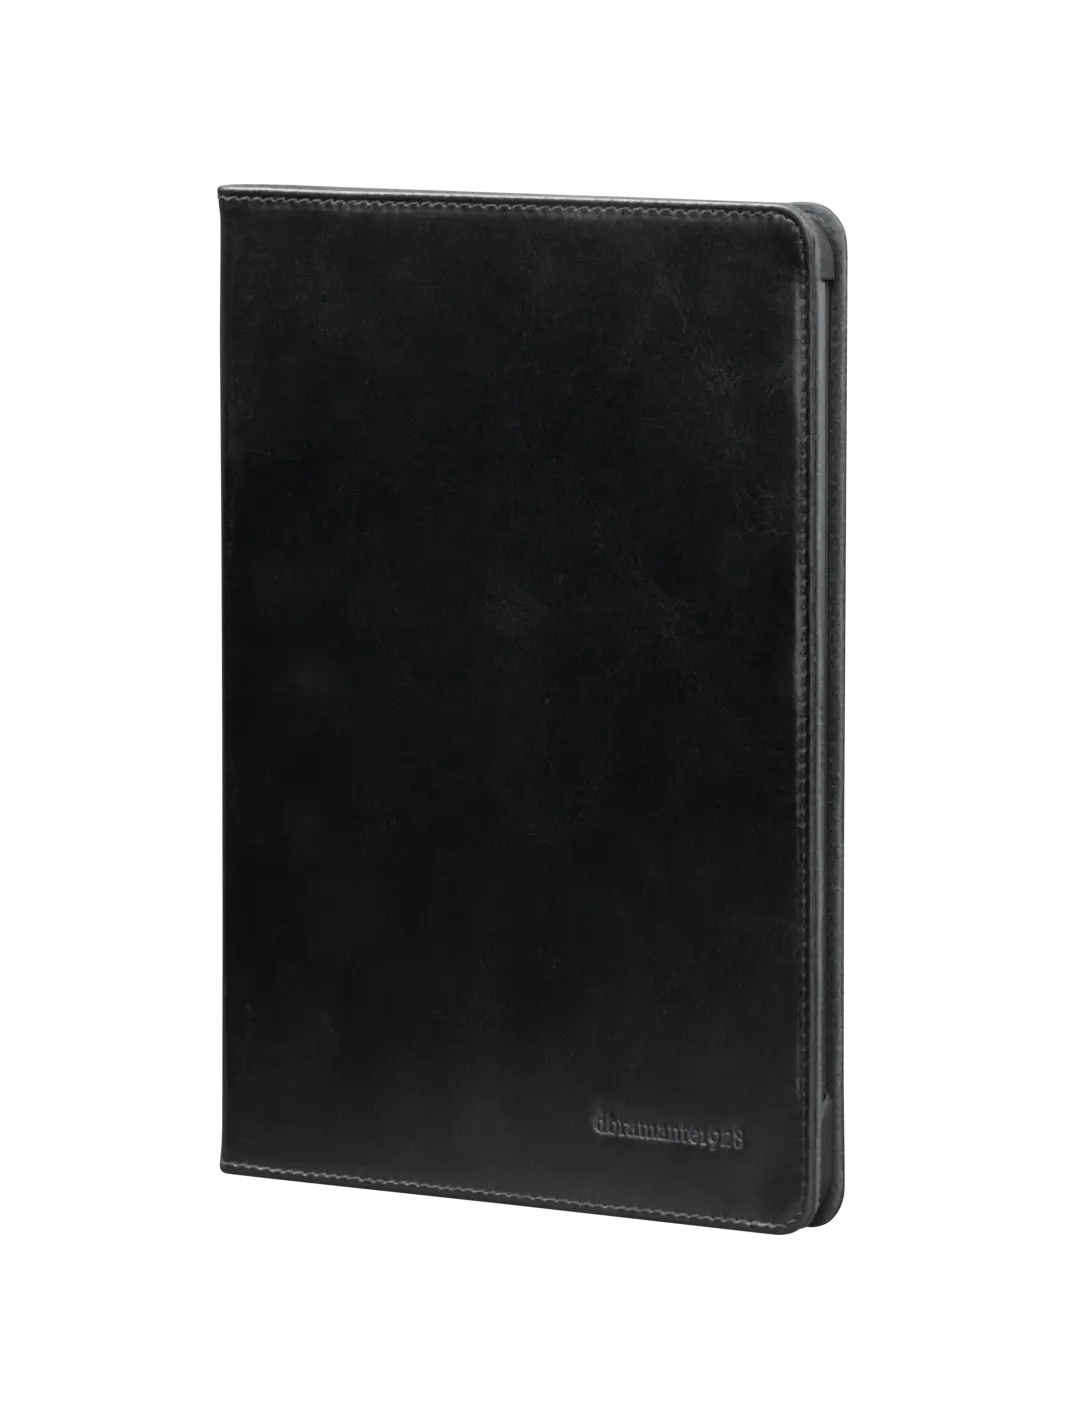 Copenhagen tablet cases Black iPad Pro 12.9" (3rd Gen) iPad Cases